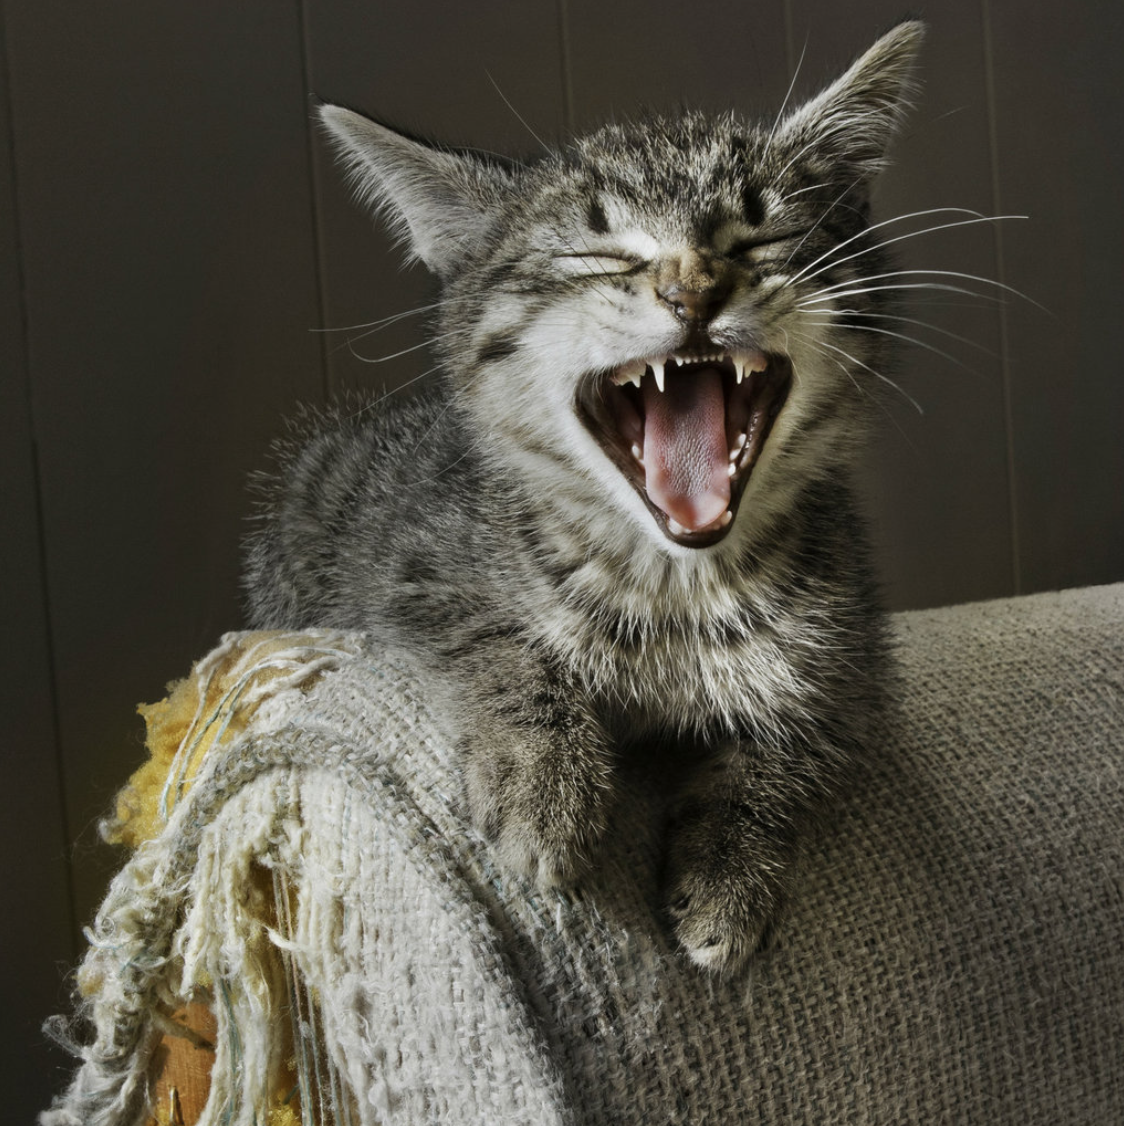 New Furniture vs. Cat Scratch Fever